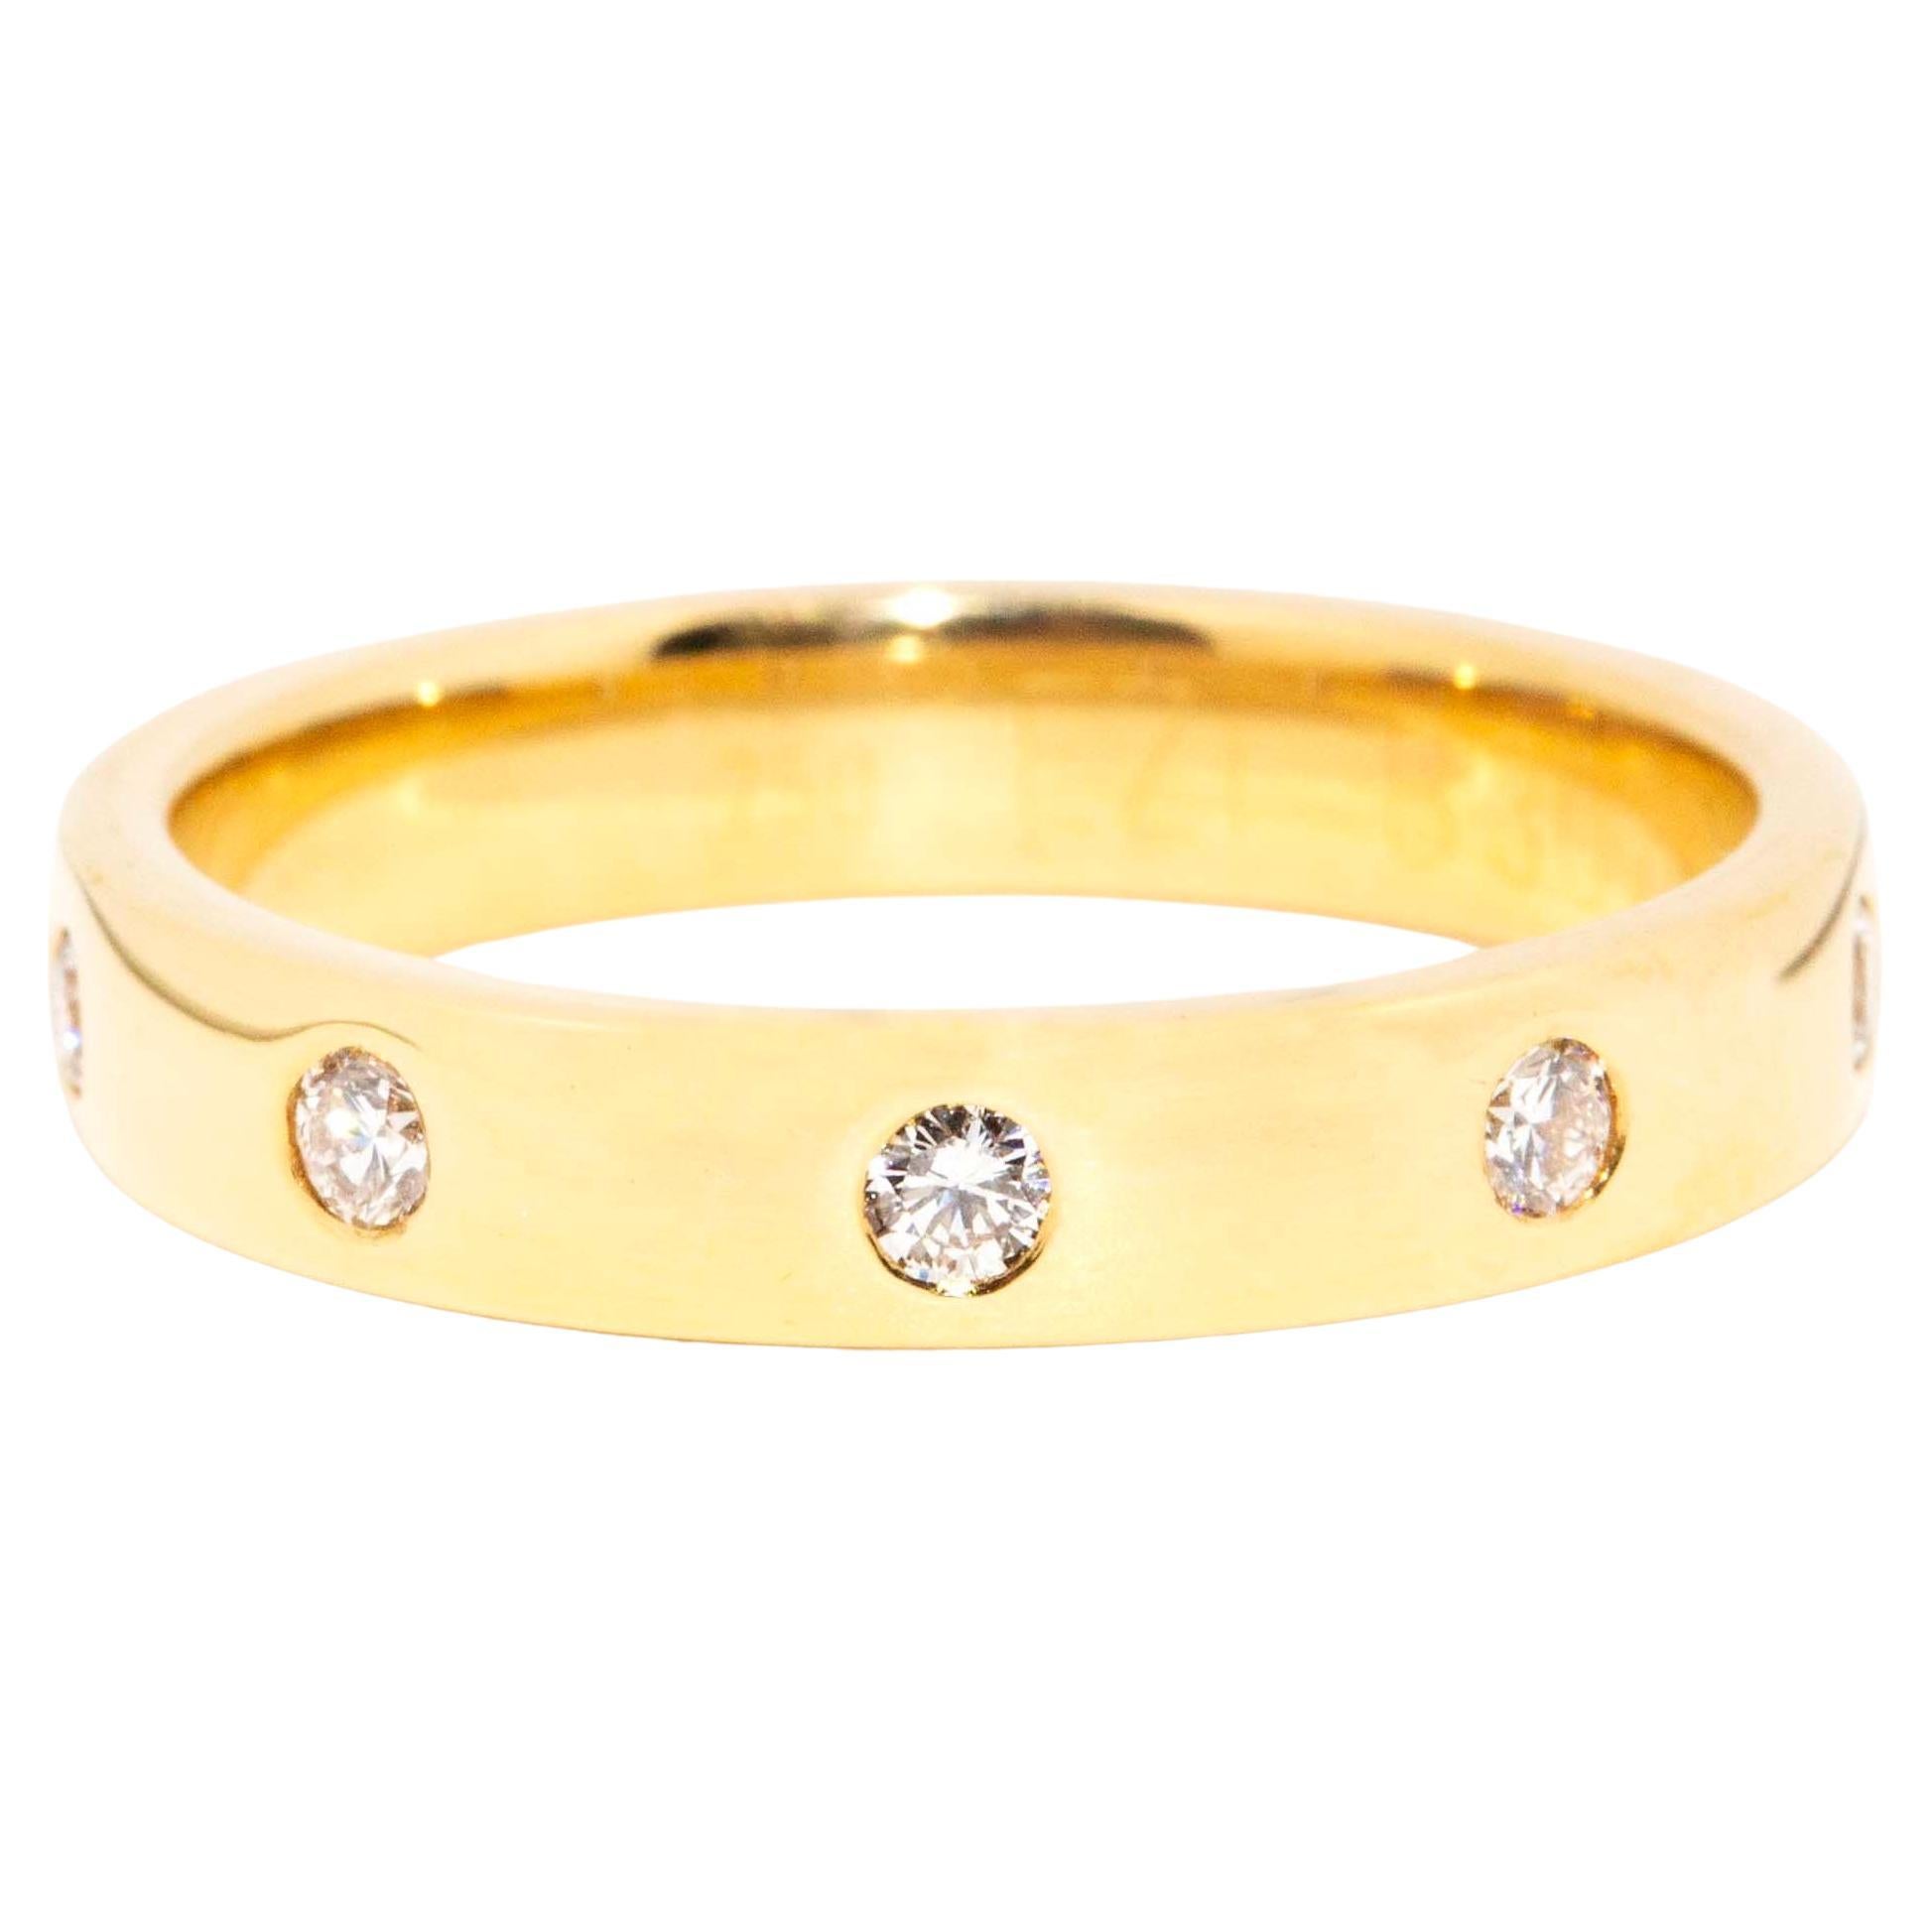 Bracelet contemporain en or jaune 18 carats serti de diamants ronds et brillants